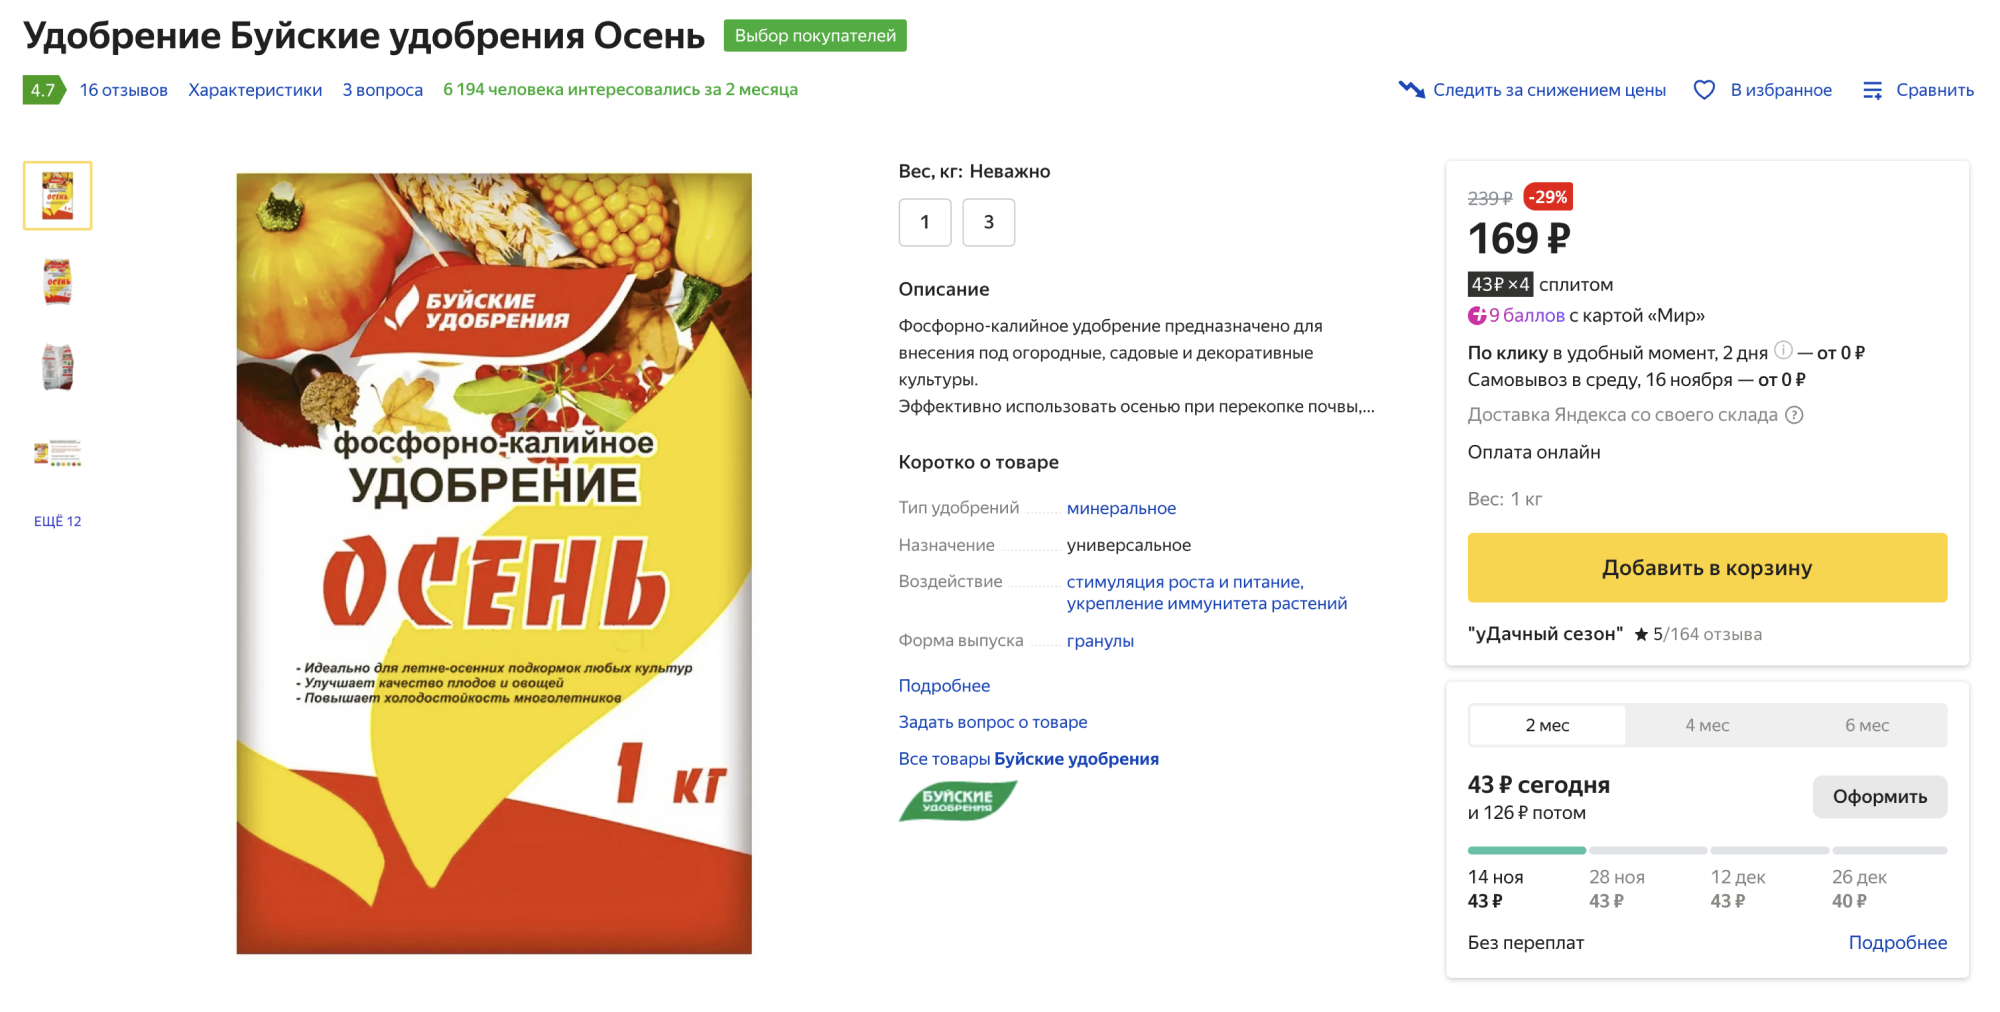 В среднем 3 кг фосфорно-калийных удобрений стоят 500⁠—⁠700 ₽. Источник: market.yandex.ru